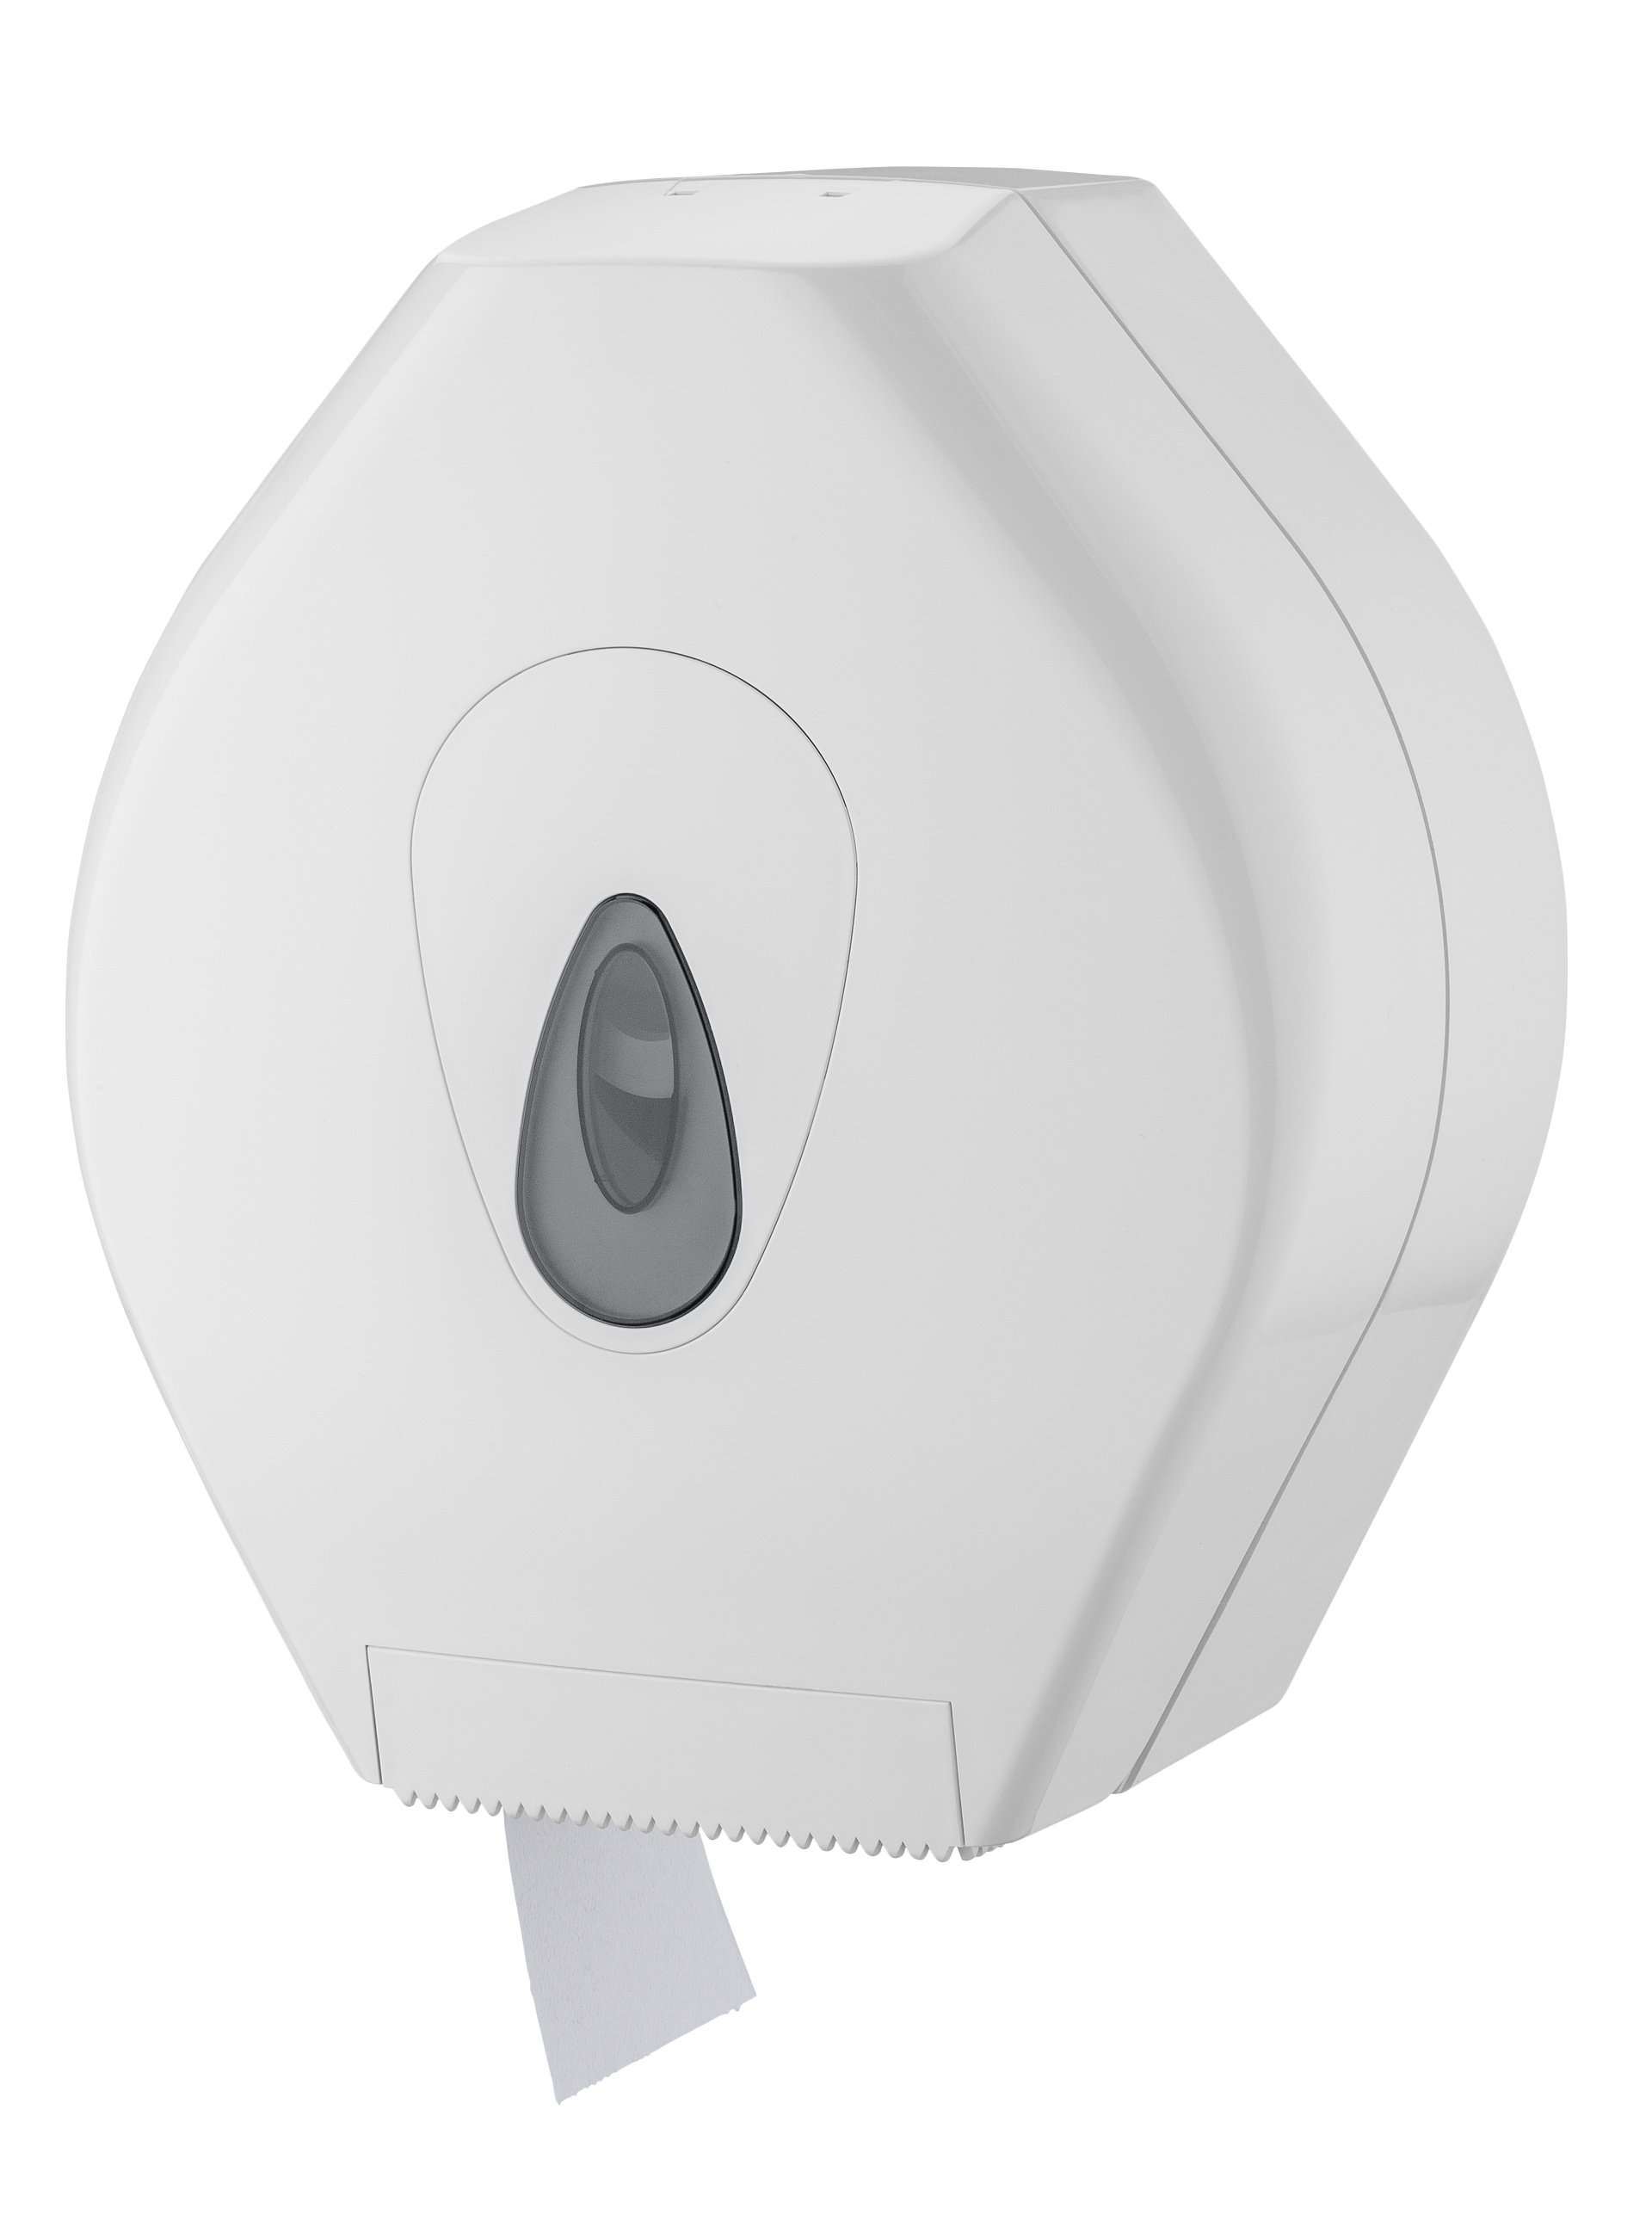 Toilettenpapier Großrollenspender Maxi, Kunststoff, für Rollen bis 300 mm Ø, weiß, 37 x 34 x 13 cm